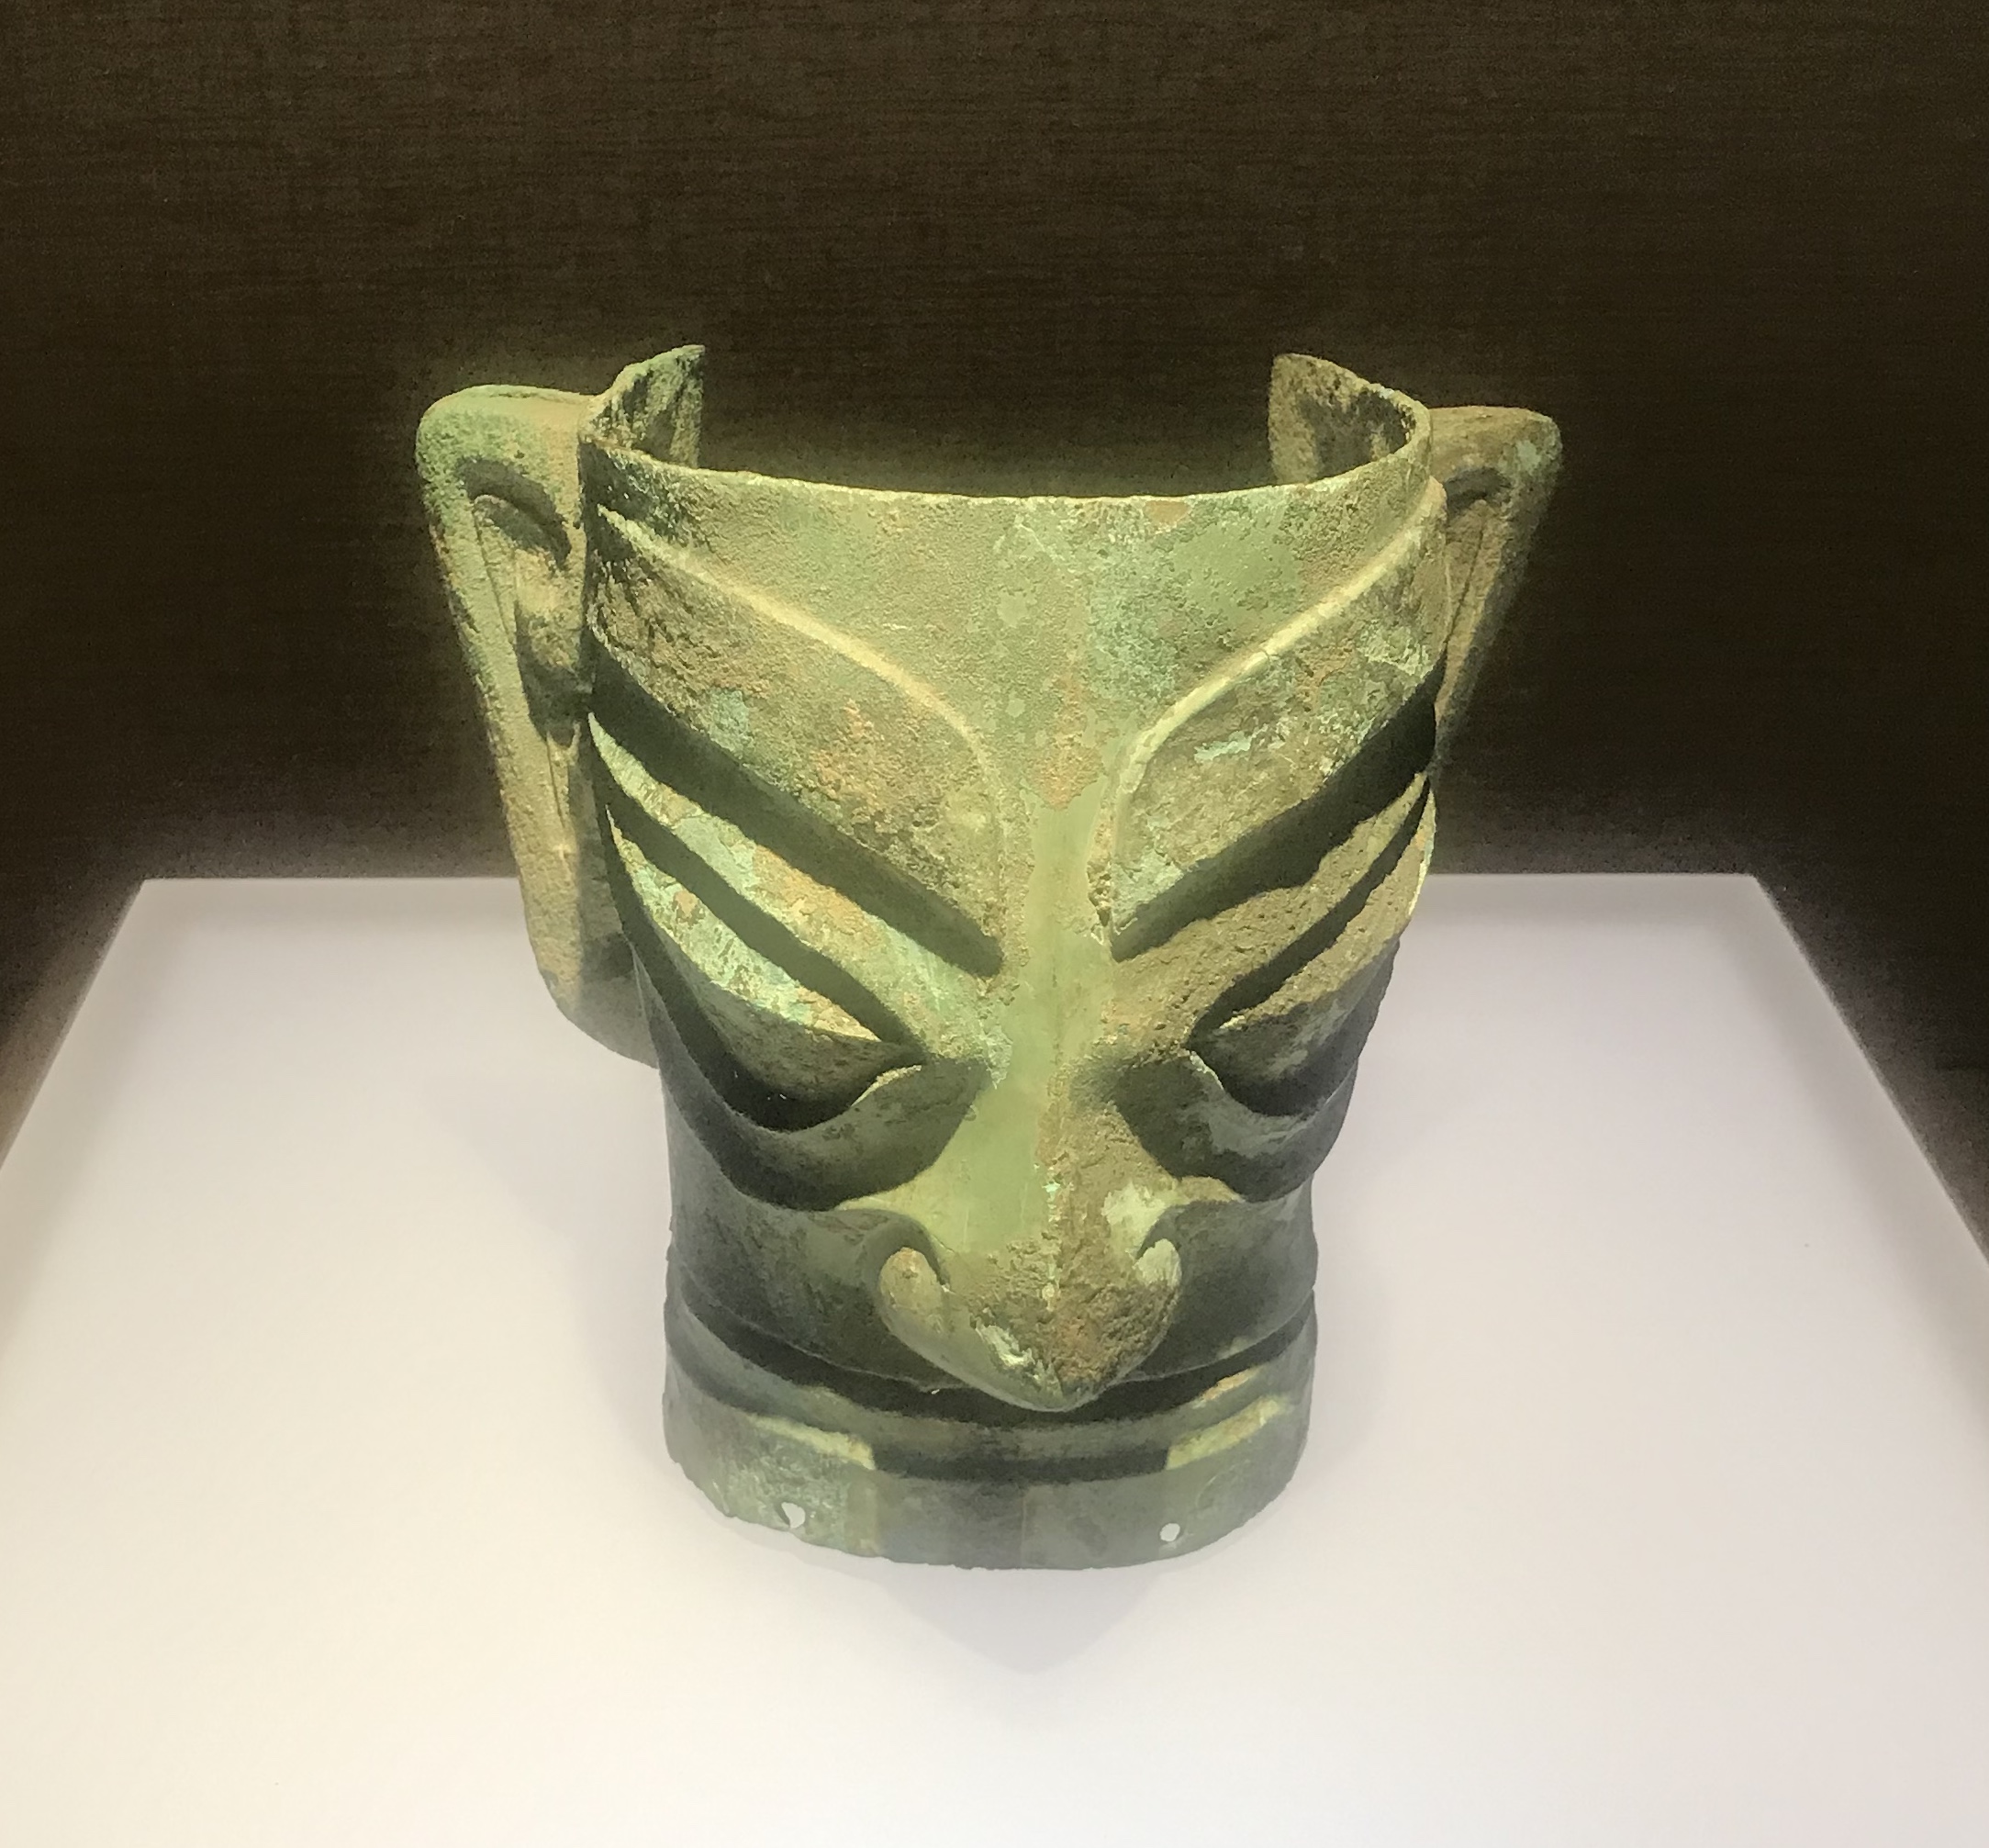  青銅人面具2-青銅器館-三星堆博物館-広漢市-徳陽市-四川省